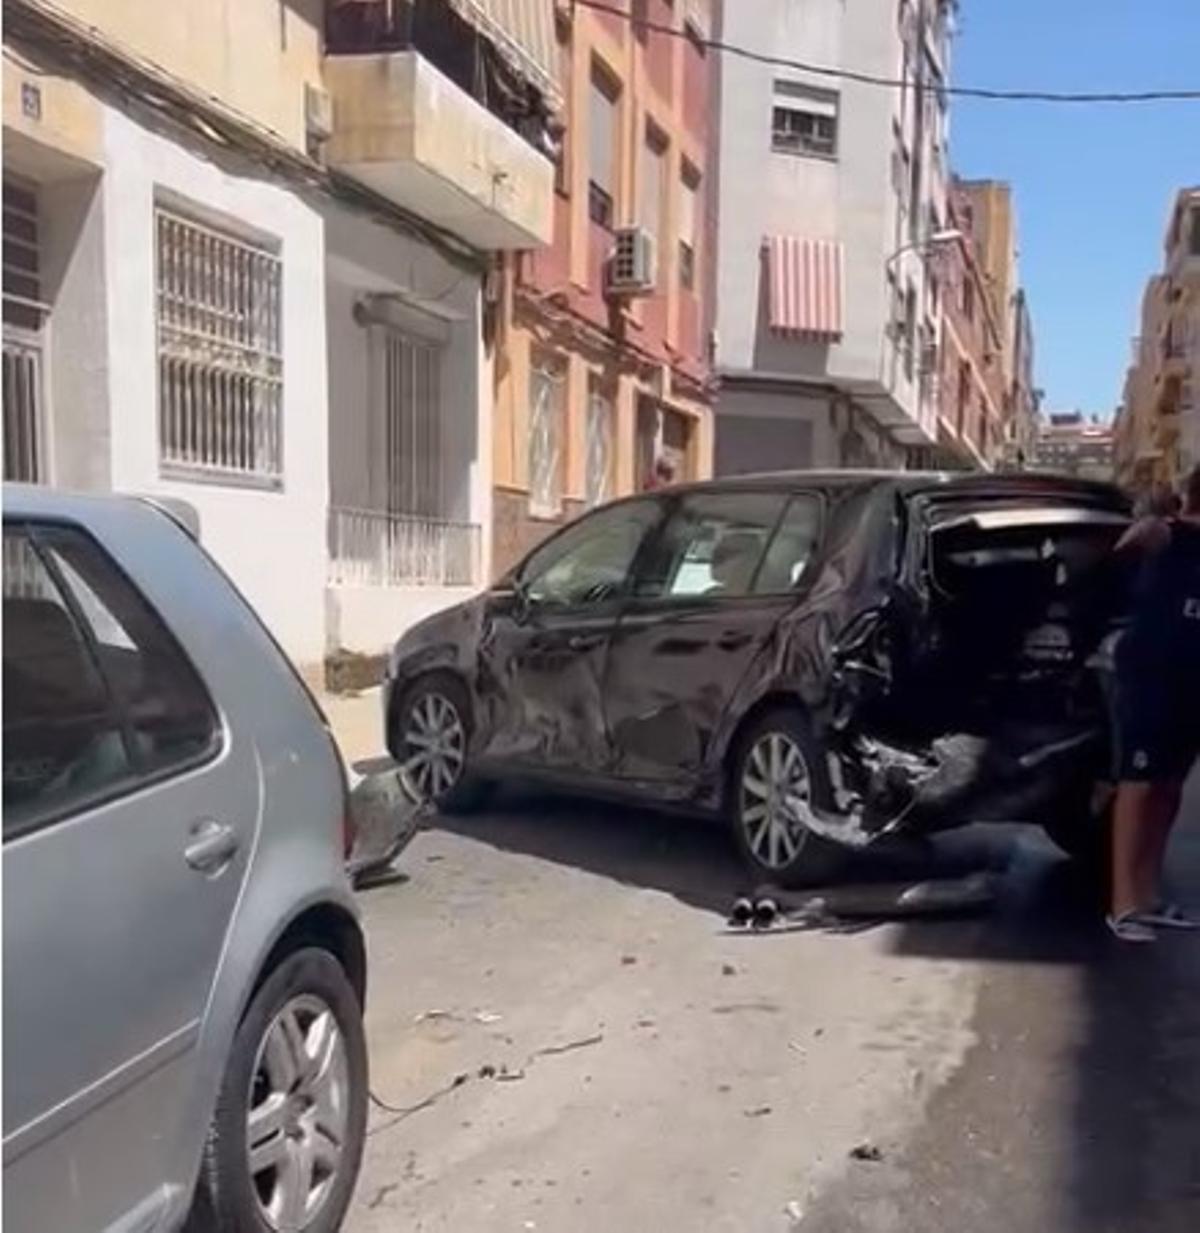 Estado de uno de los coches aparcados en la calle tras el accidente.